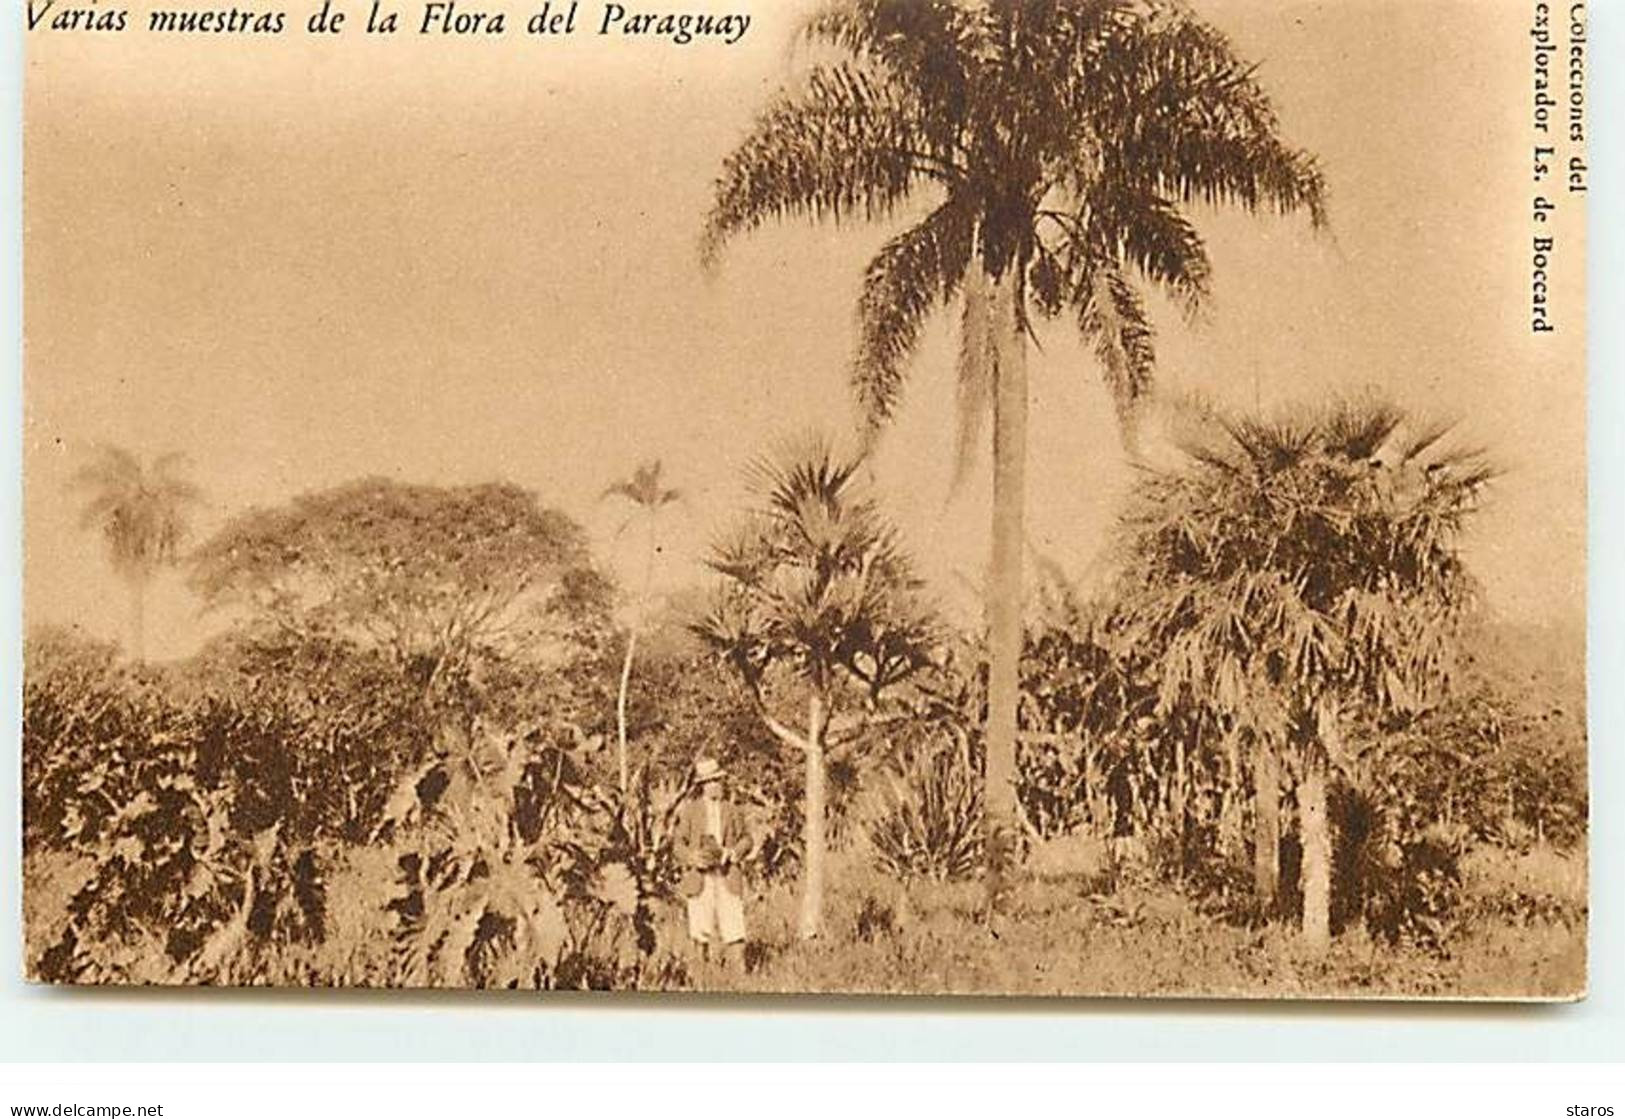 PARAGUAY - Varias Muestras De La Flora Del Paraguay - Paraguay